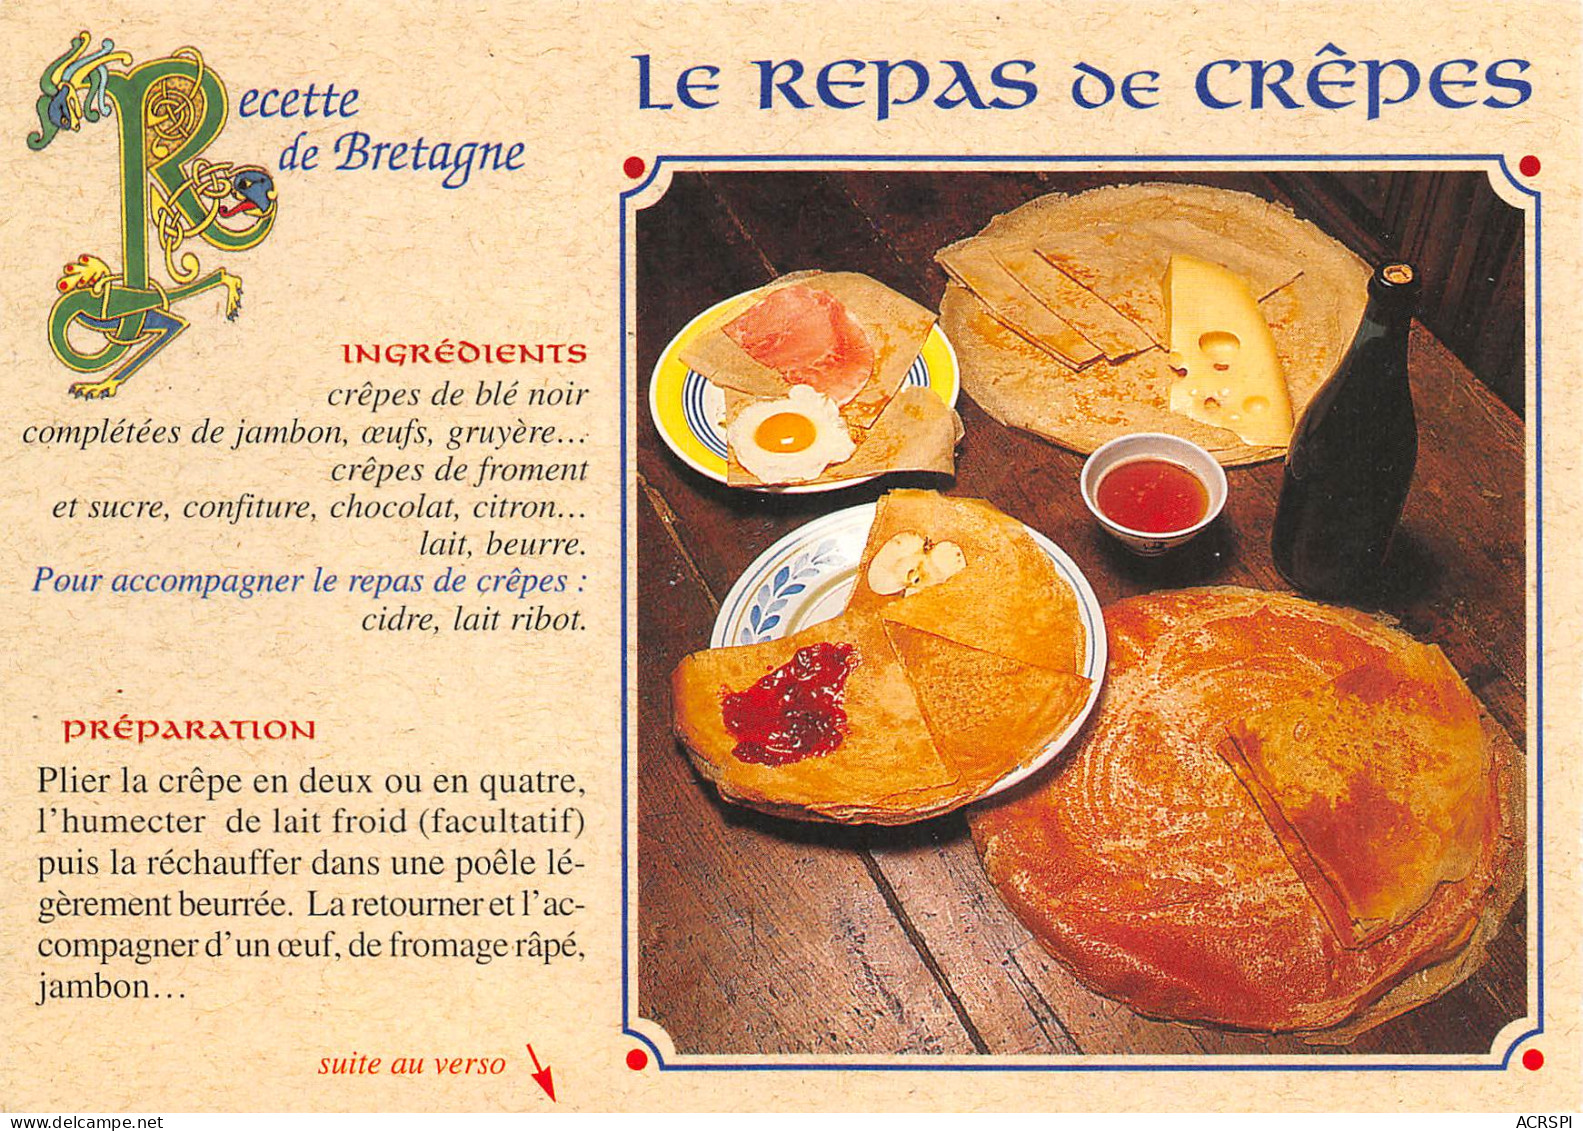 Recette Du Repas De Crêpes Bretonne Chateaulin   N° 54 \MK3029 - Recipes (cooking)